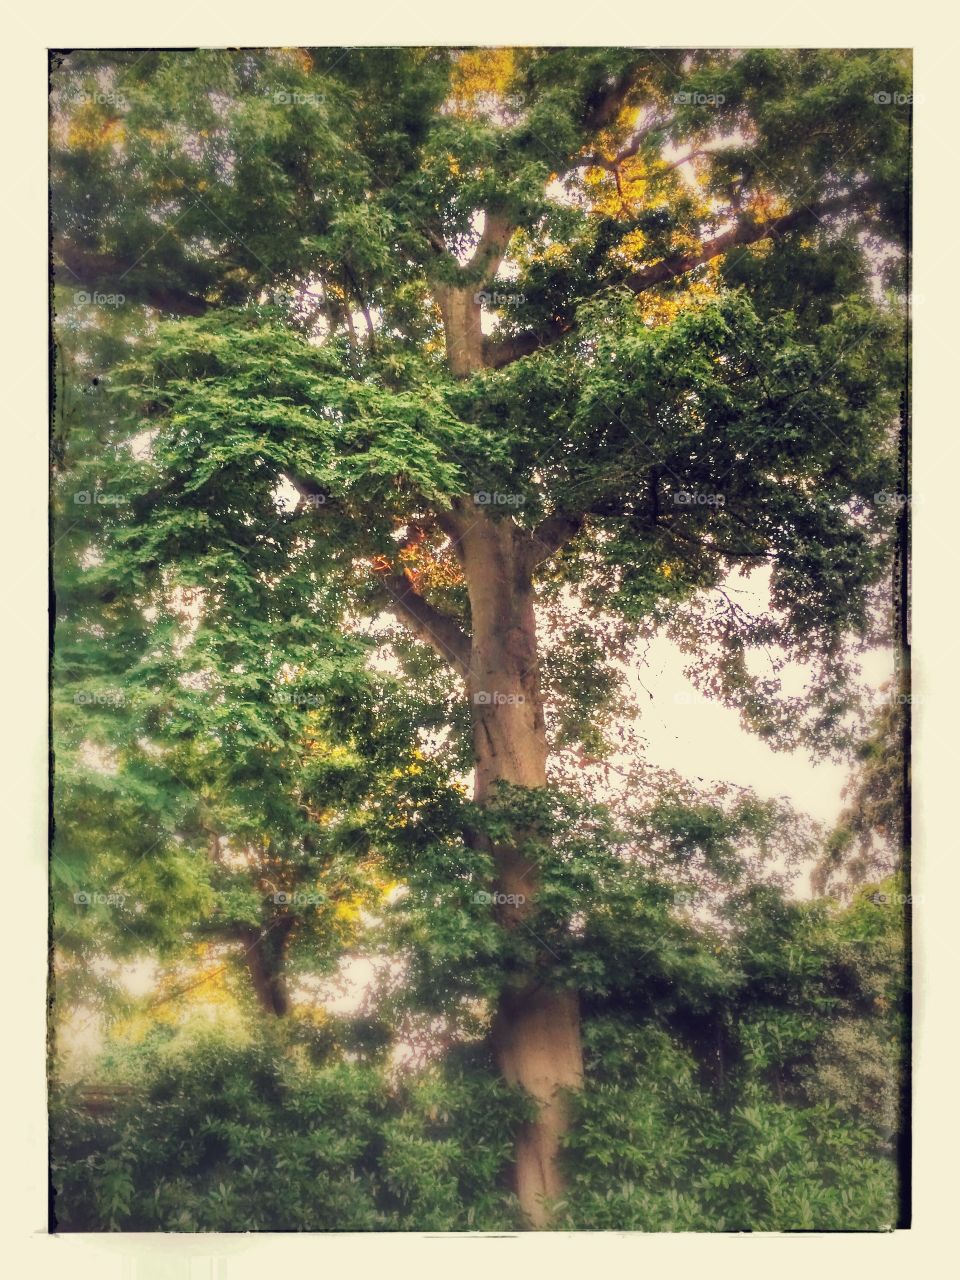 Scarlet Oak in my garden, with English Oak in background.
